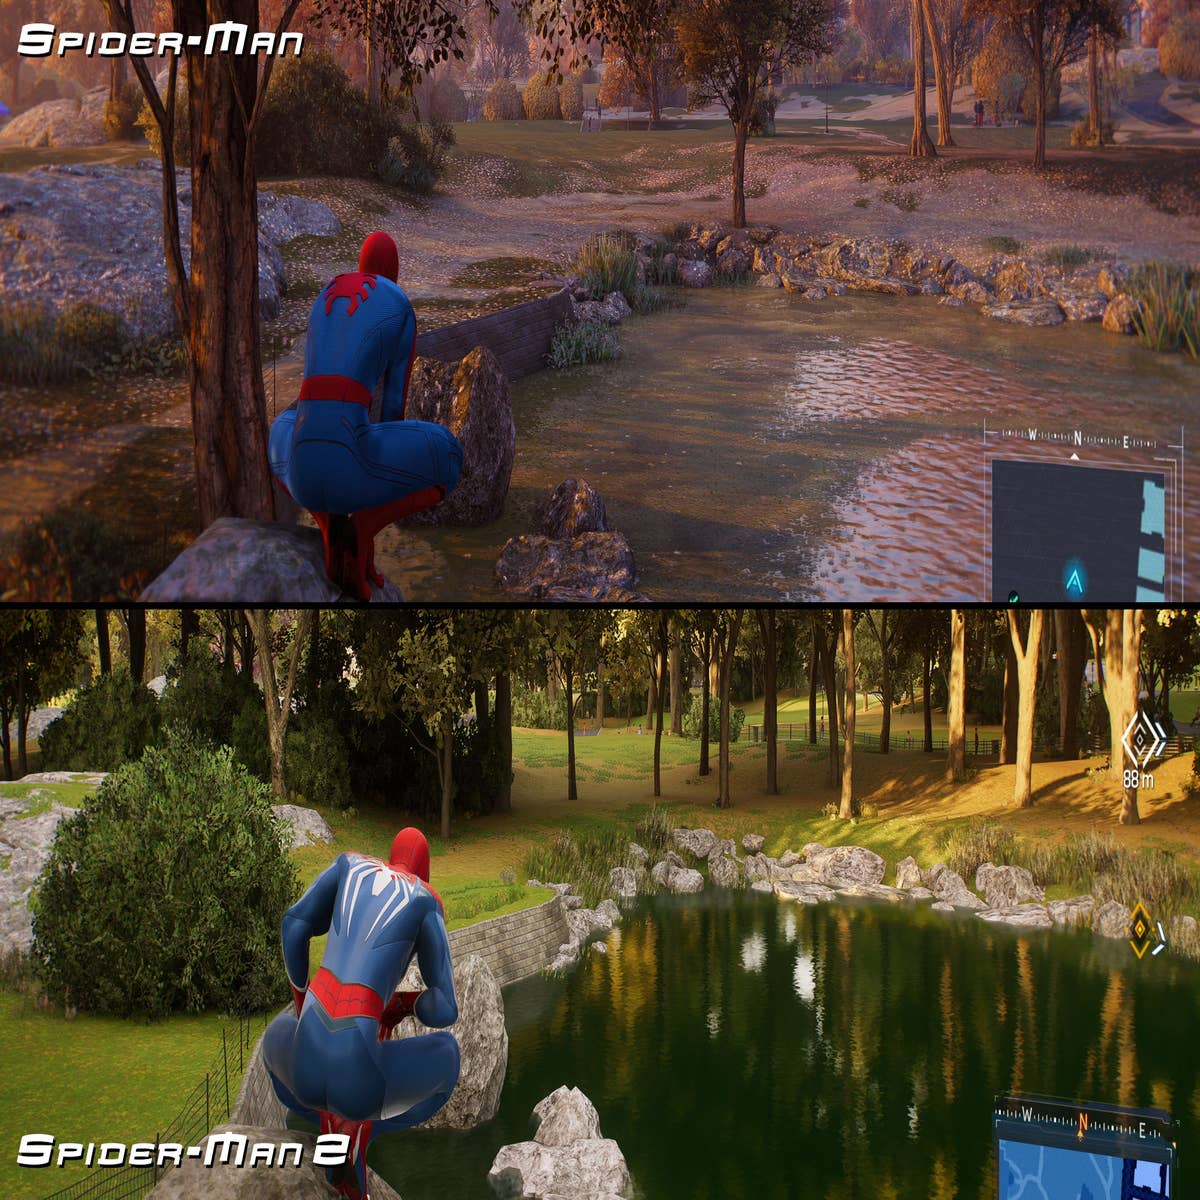 Marvel's Spider-Man 2: o grande salto qualitativo da PS5